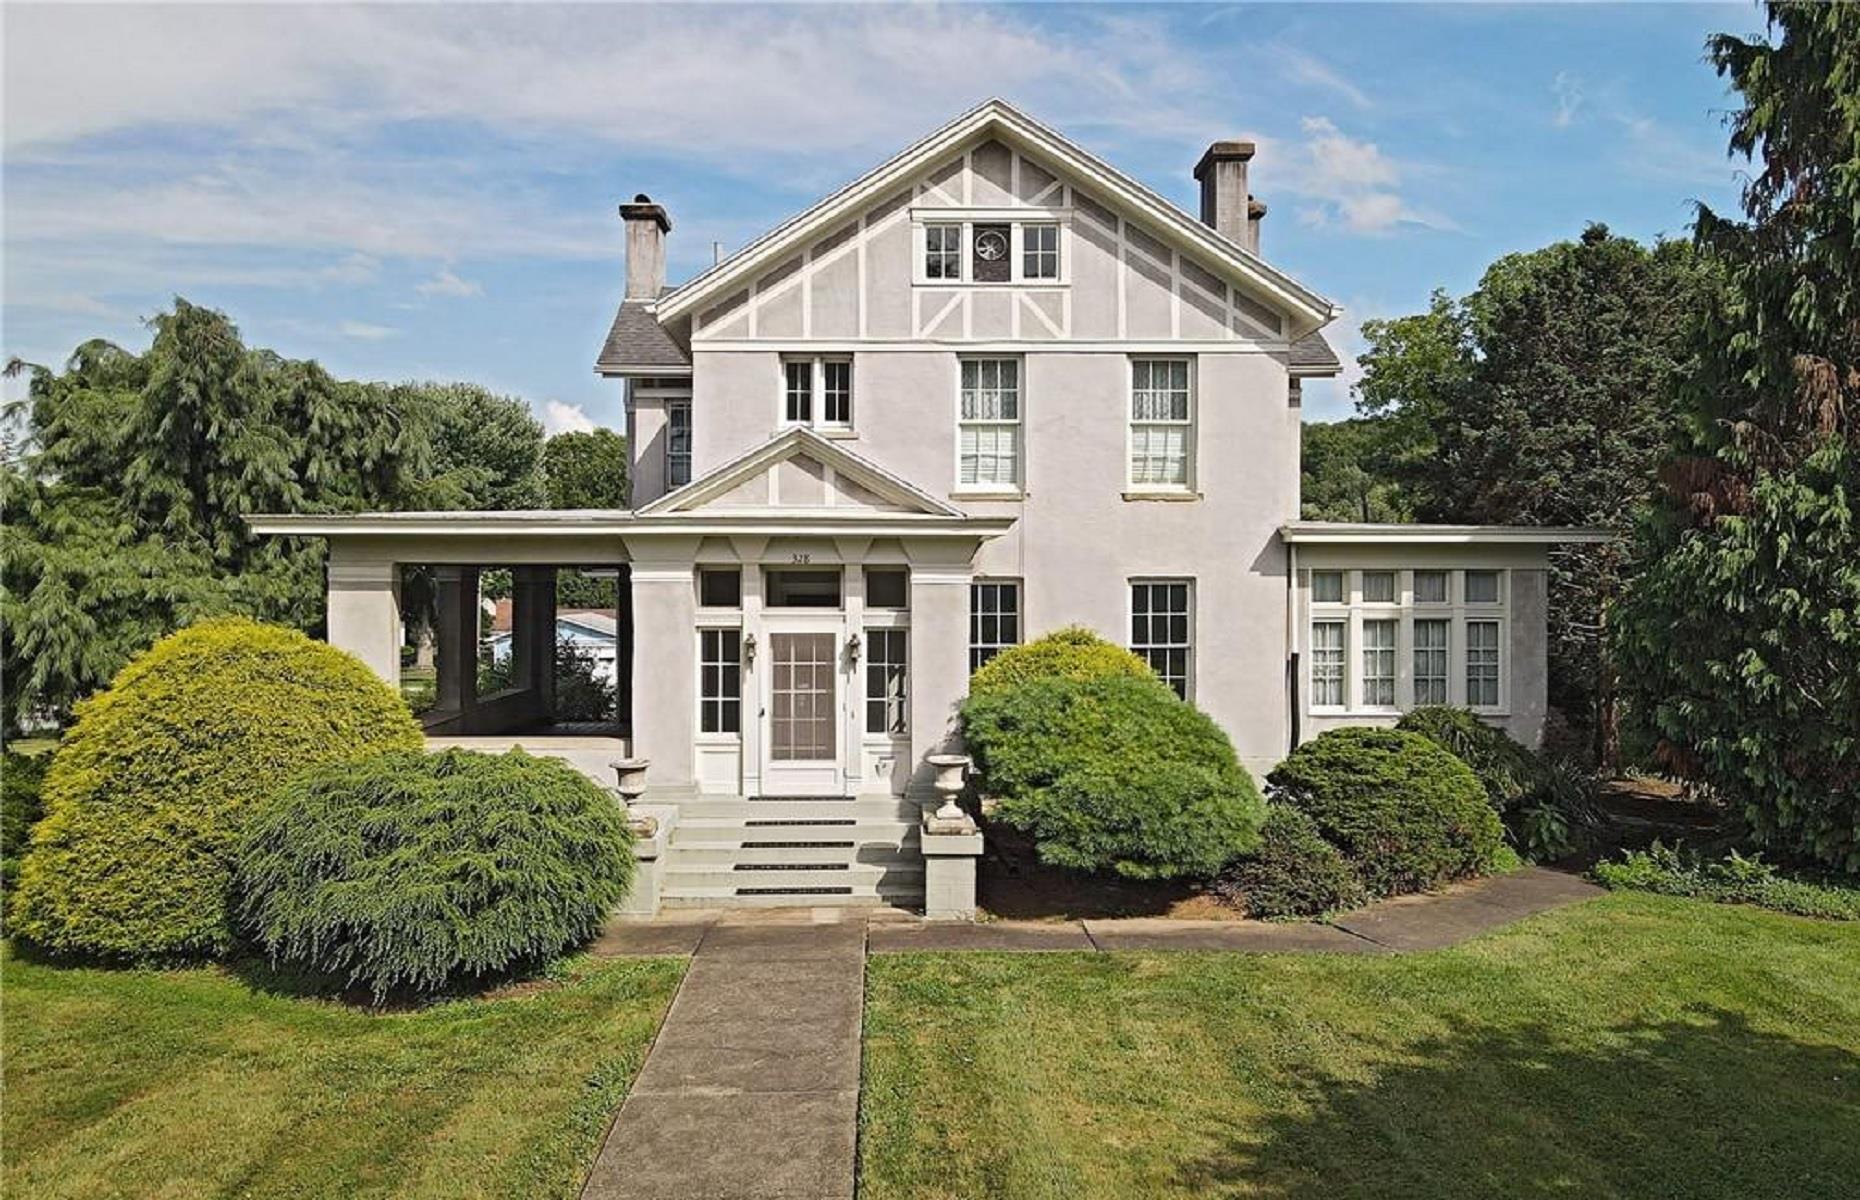 Stunning Victorian home, Marietta, Ohio: $300,000 (£245k)